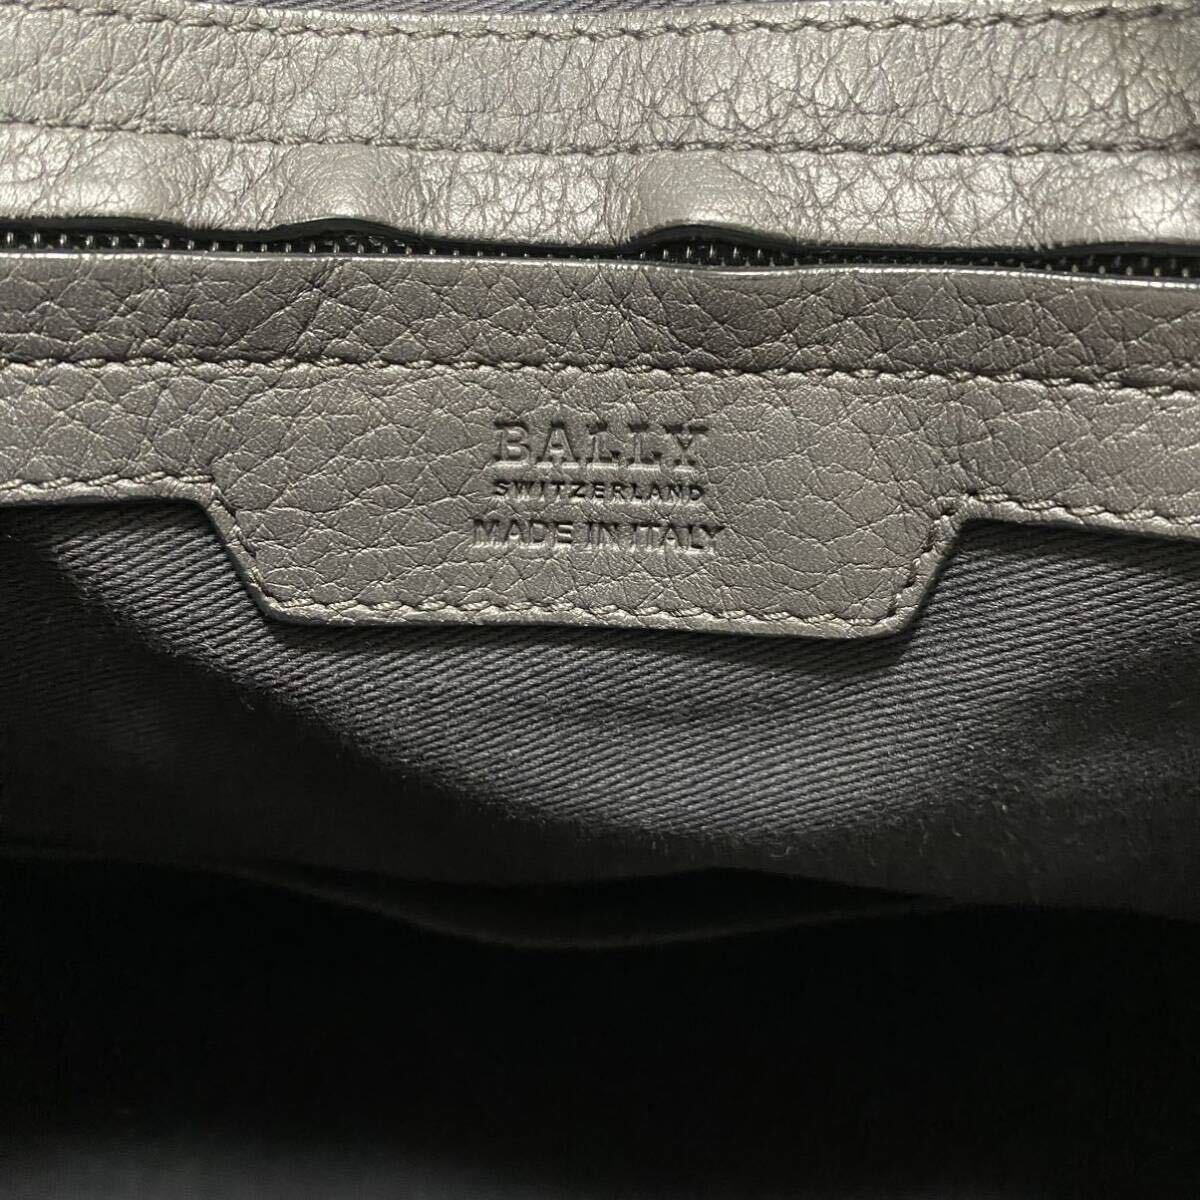 [ новое время модель ]A4 место хранения /BALLY Bally мужской 2way большая сумка портфель портфель сумка на плечо кожа морщина кожа серый 1 иен 